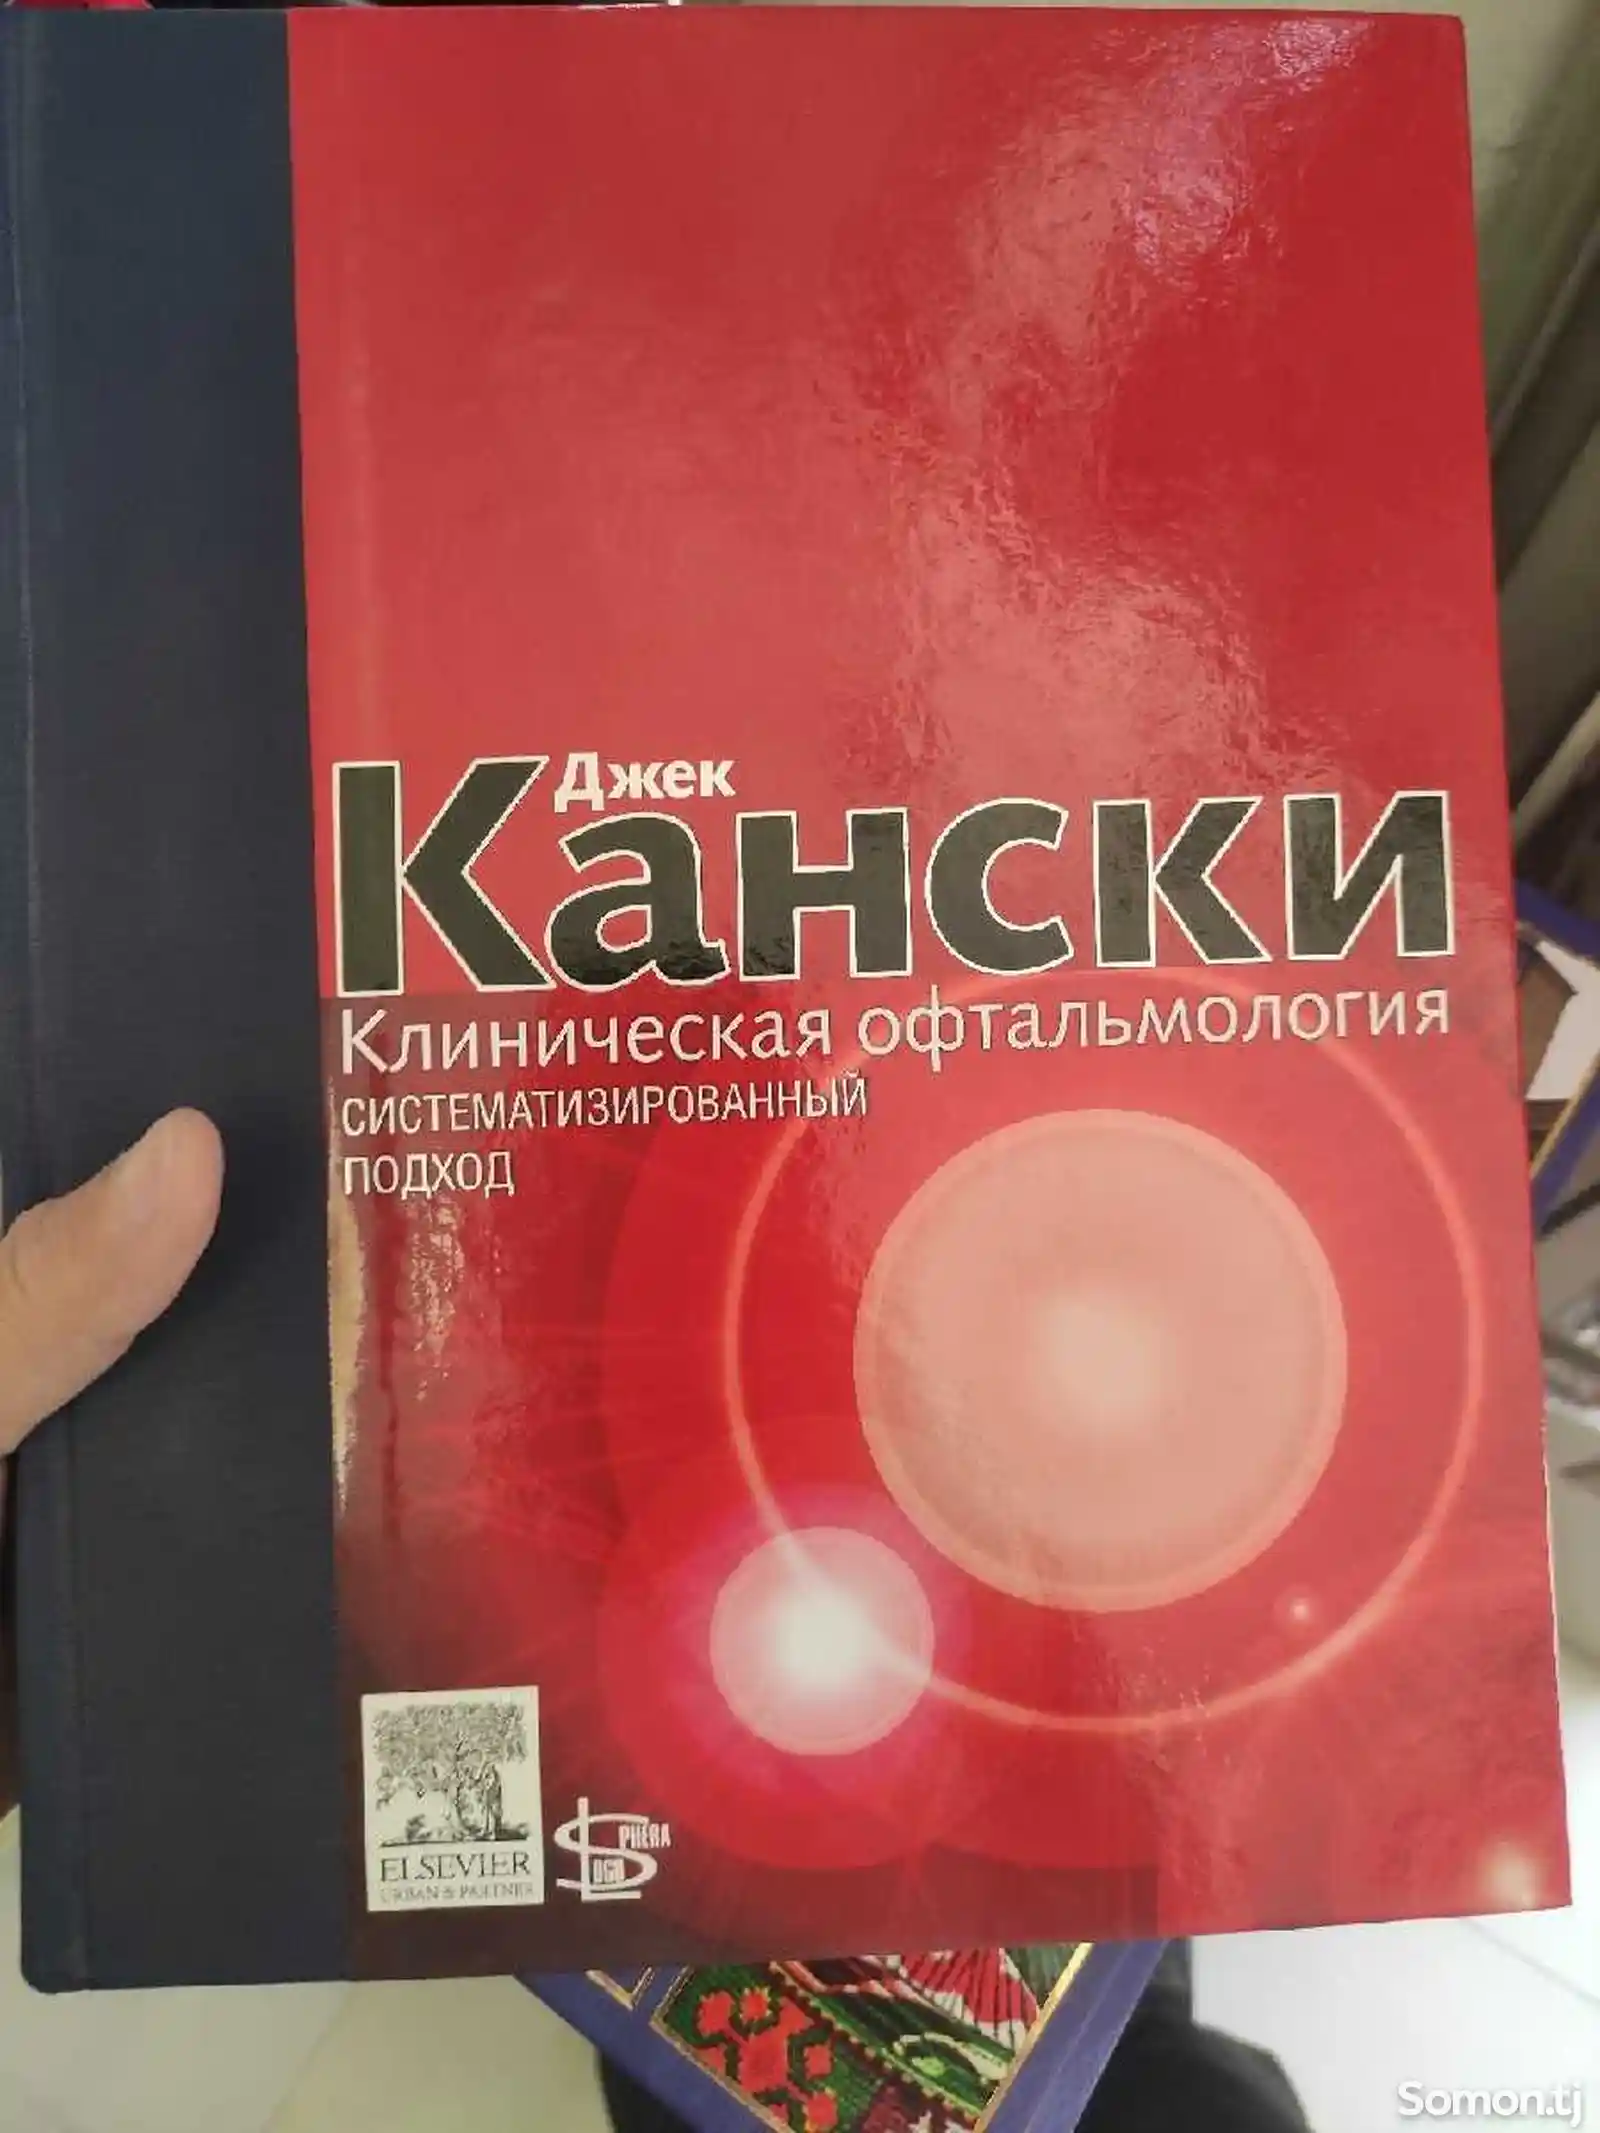 Книга Клиническая офтальмология Кански-1